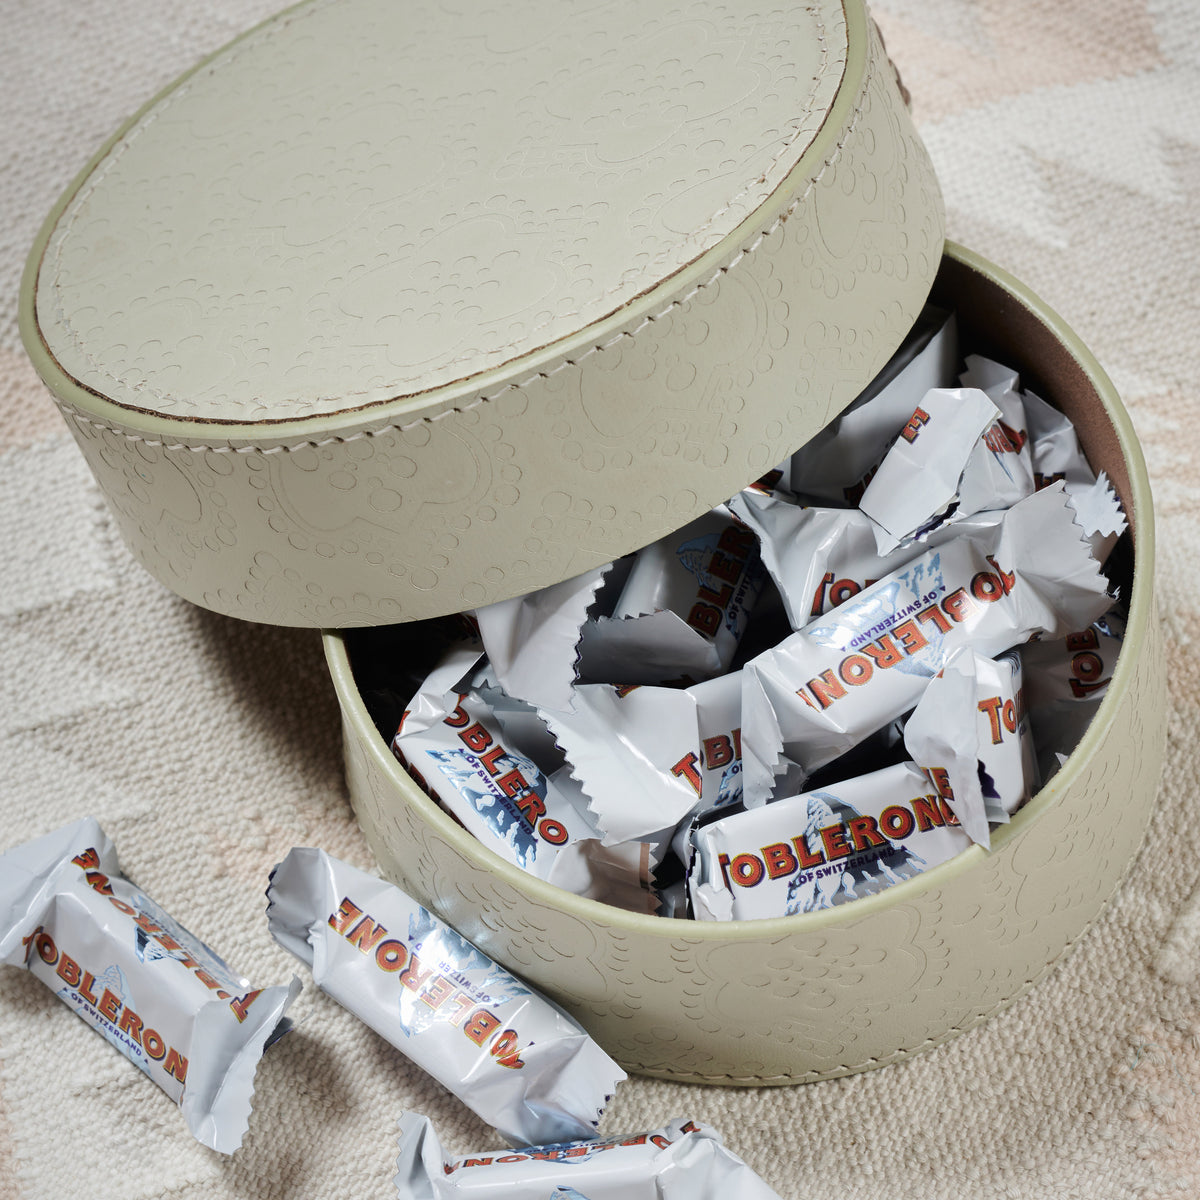 Dose rund flach ICON aus Leder geprägt im farbton foggy, gefüllt mit toblerone schokolade